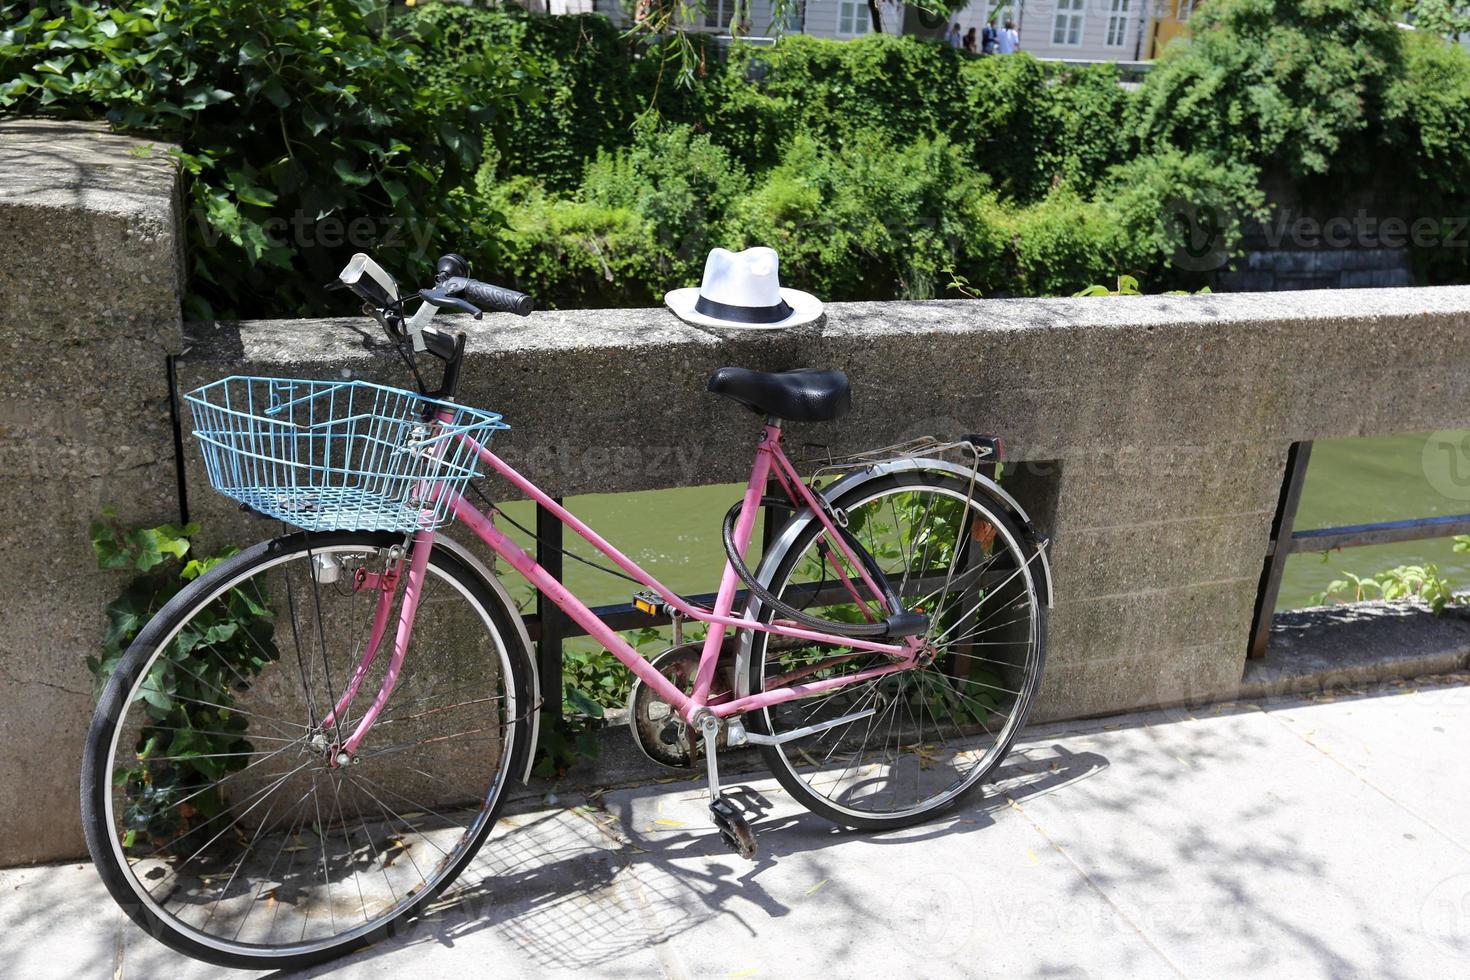 stand di biciclette per strada in una grande città foto